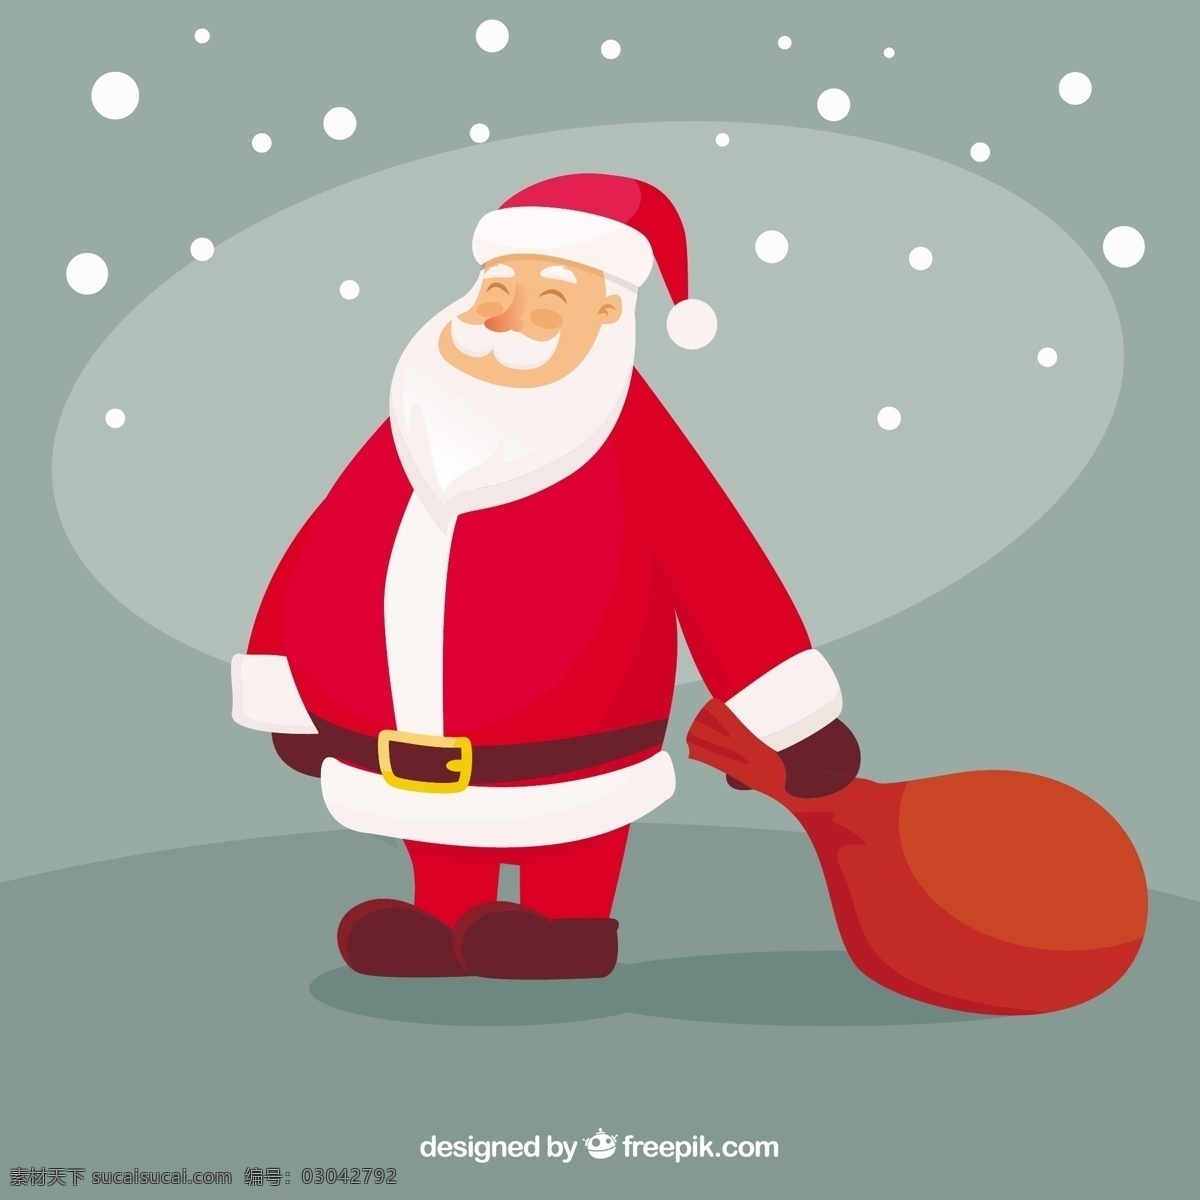 可爱 圣诞老人 性格 圣诞节 快乐 新的一年 快活 冬季 字符 庆典 假日 新年快乐 节日 季节 喜庆